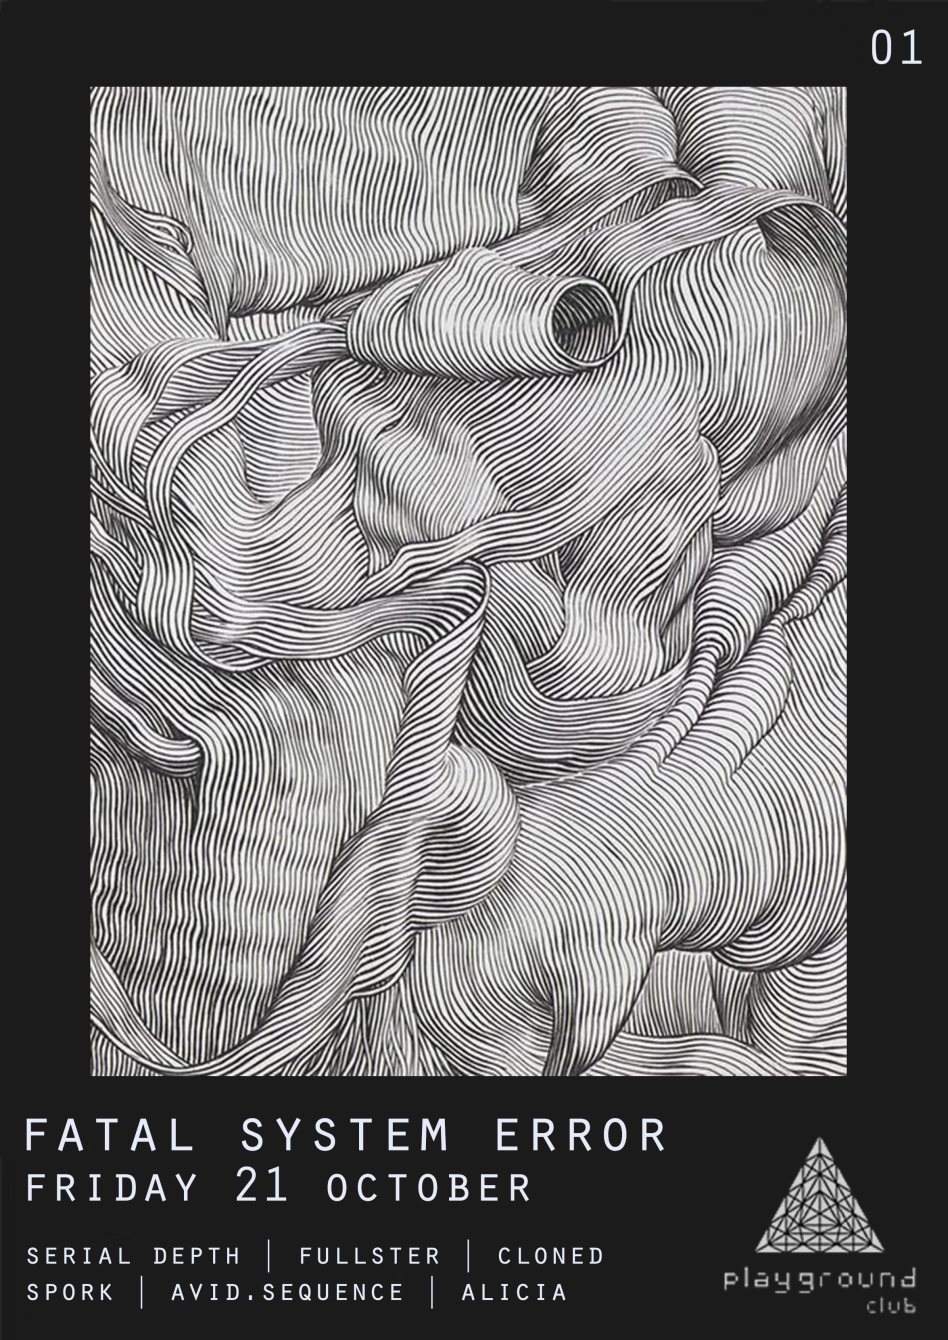 Fatal System Error [01] - フライヤー表